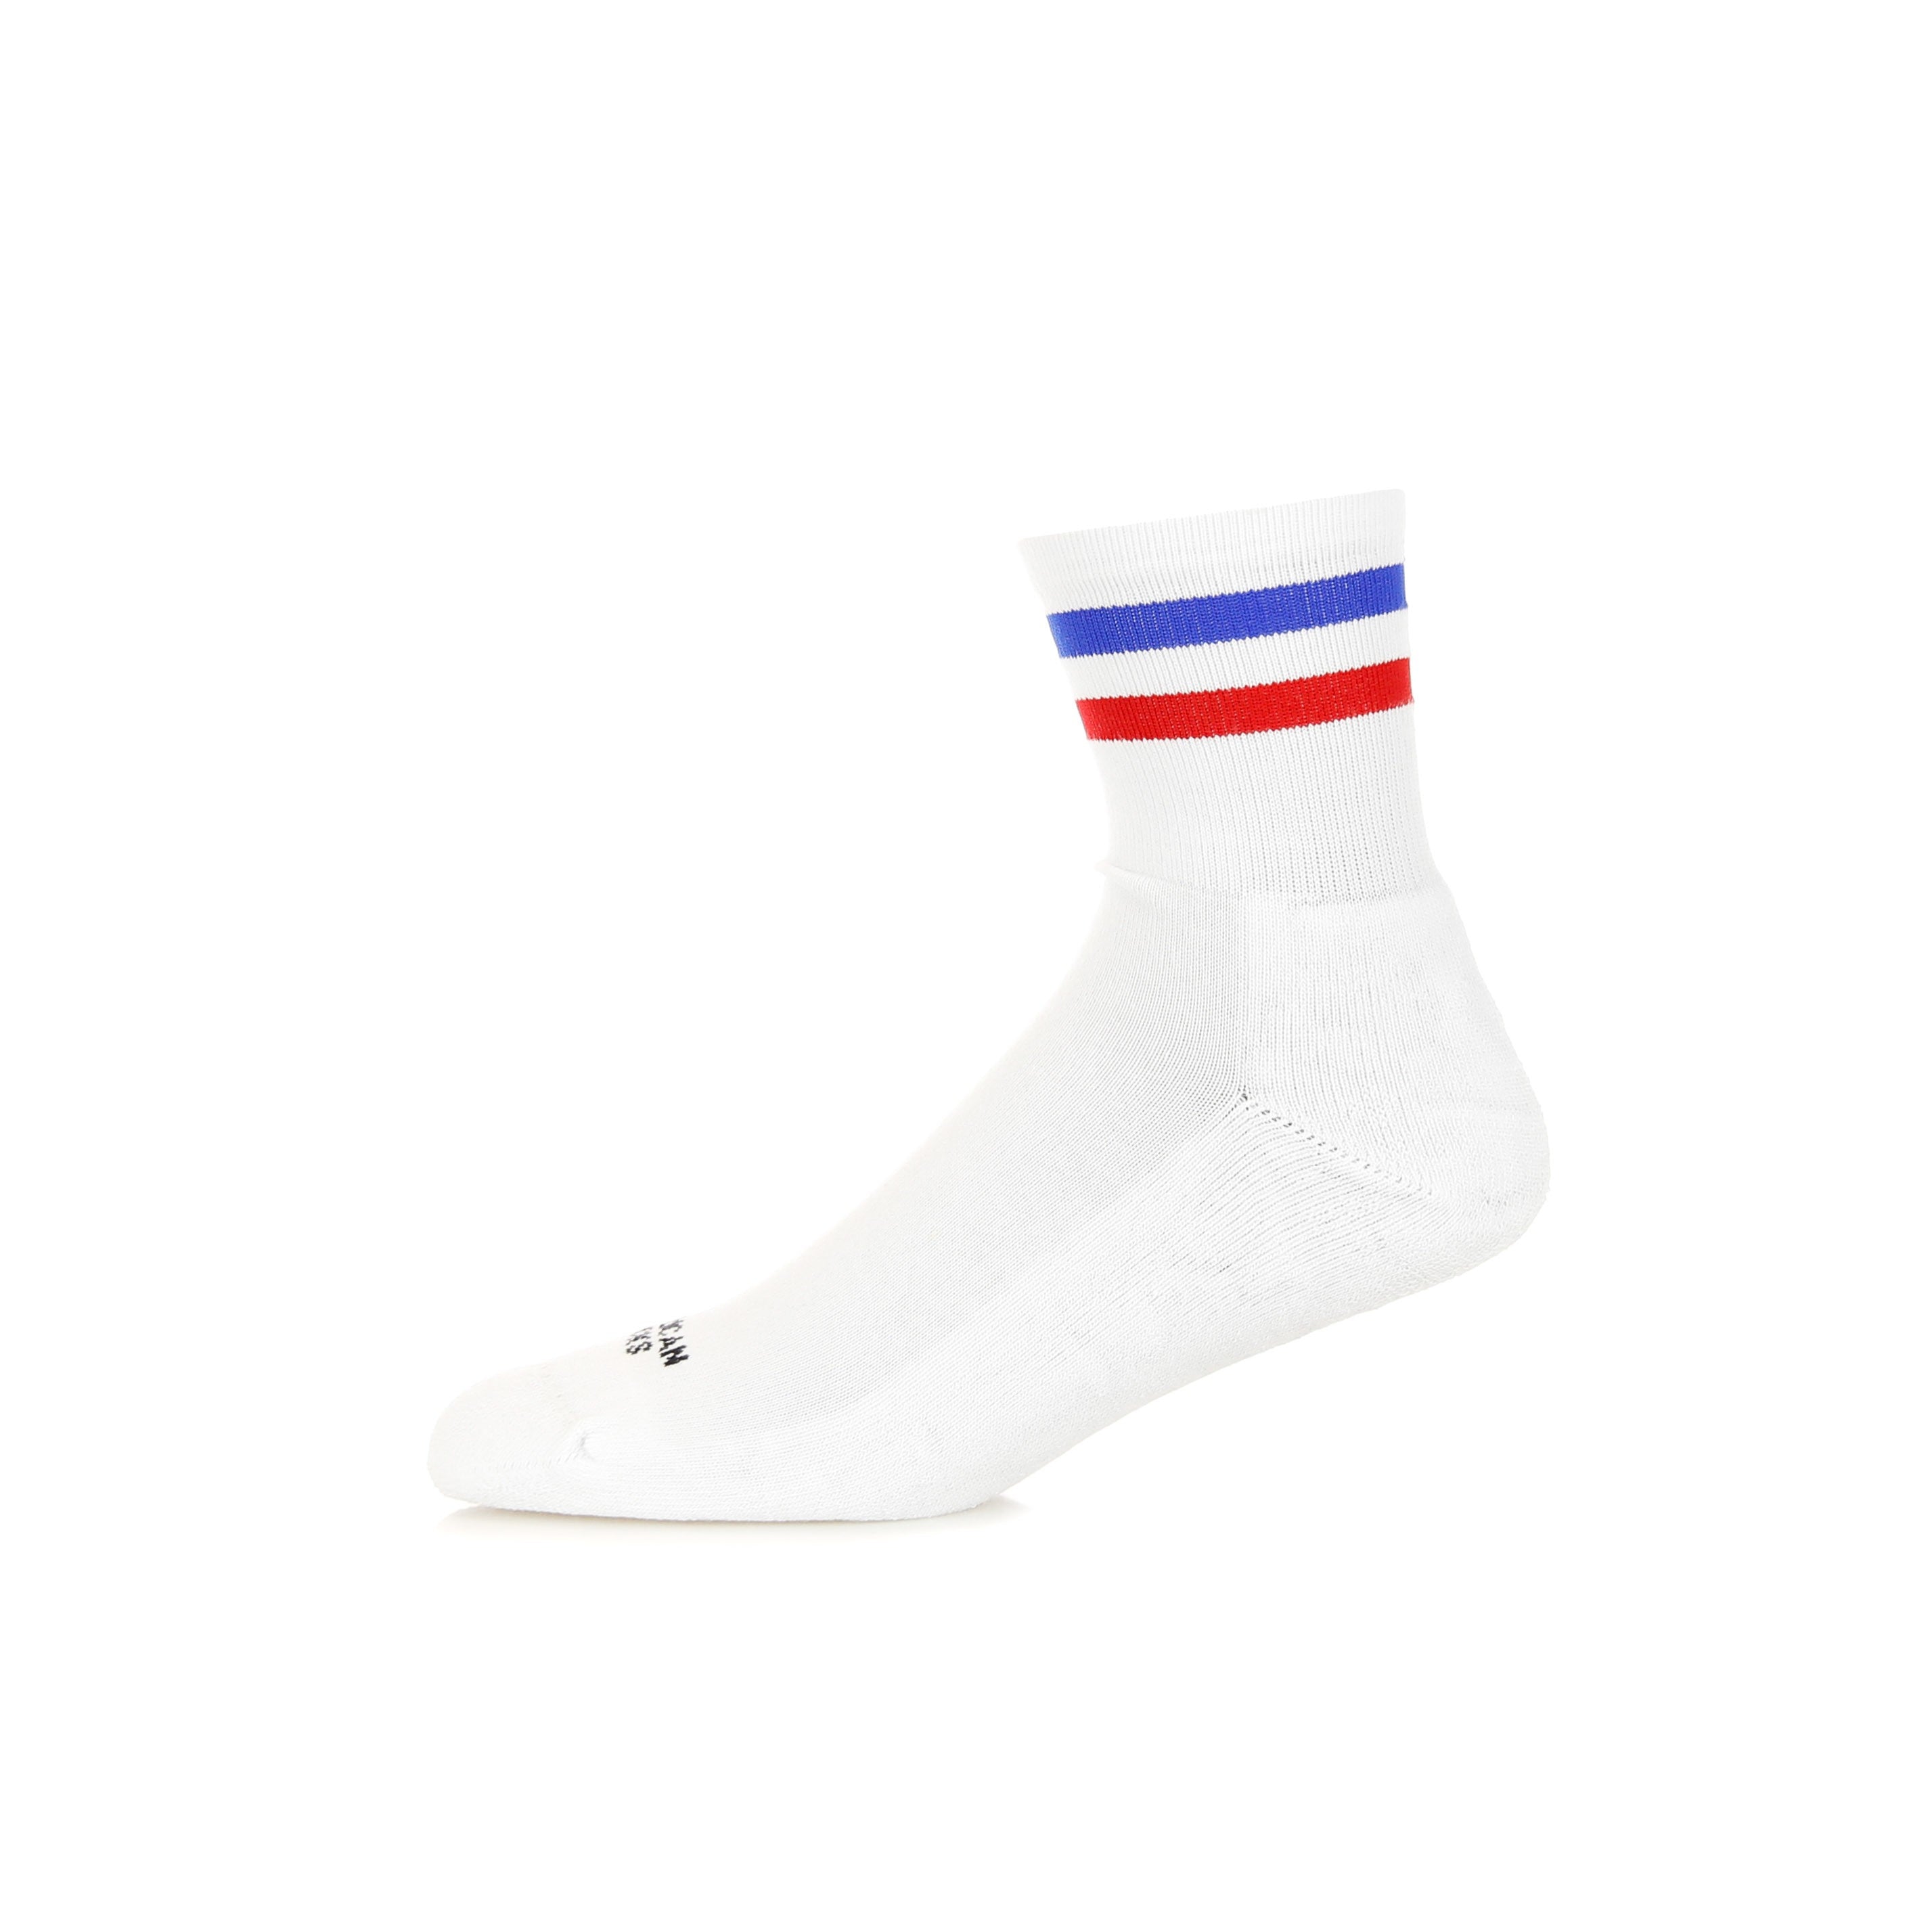 American Socks, Calza Bassa Uomo American Pride, White